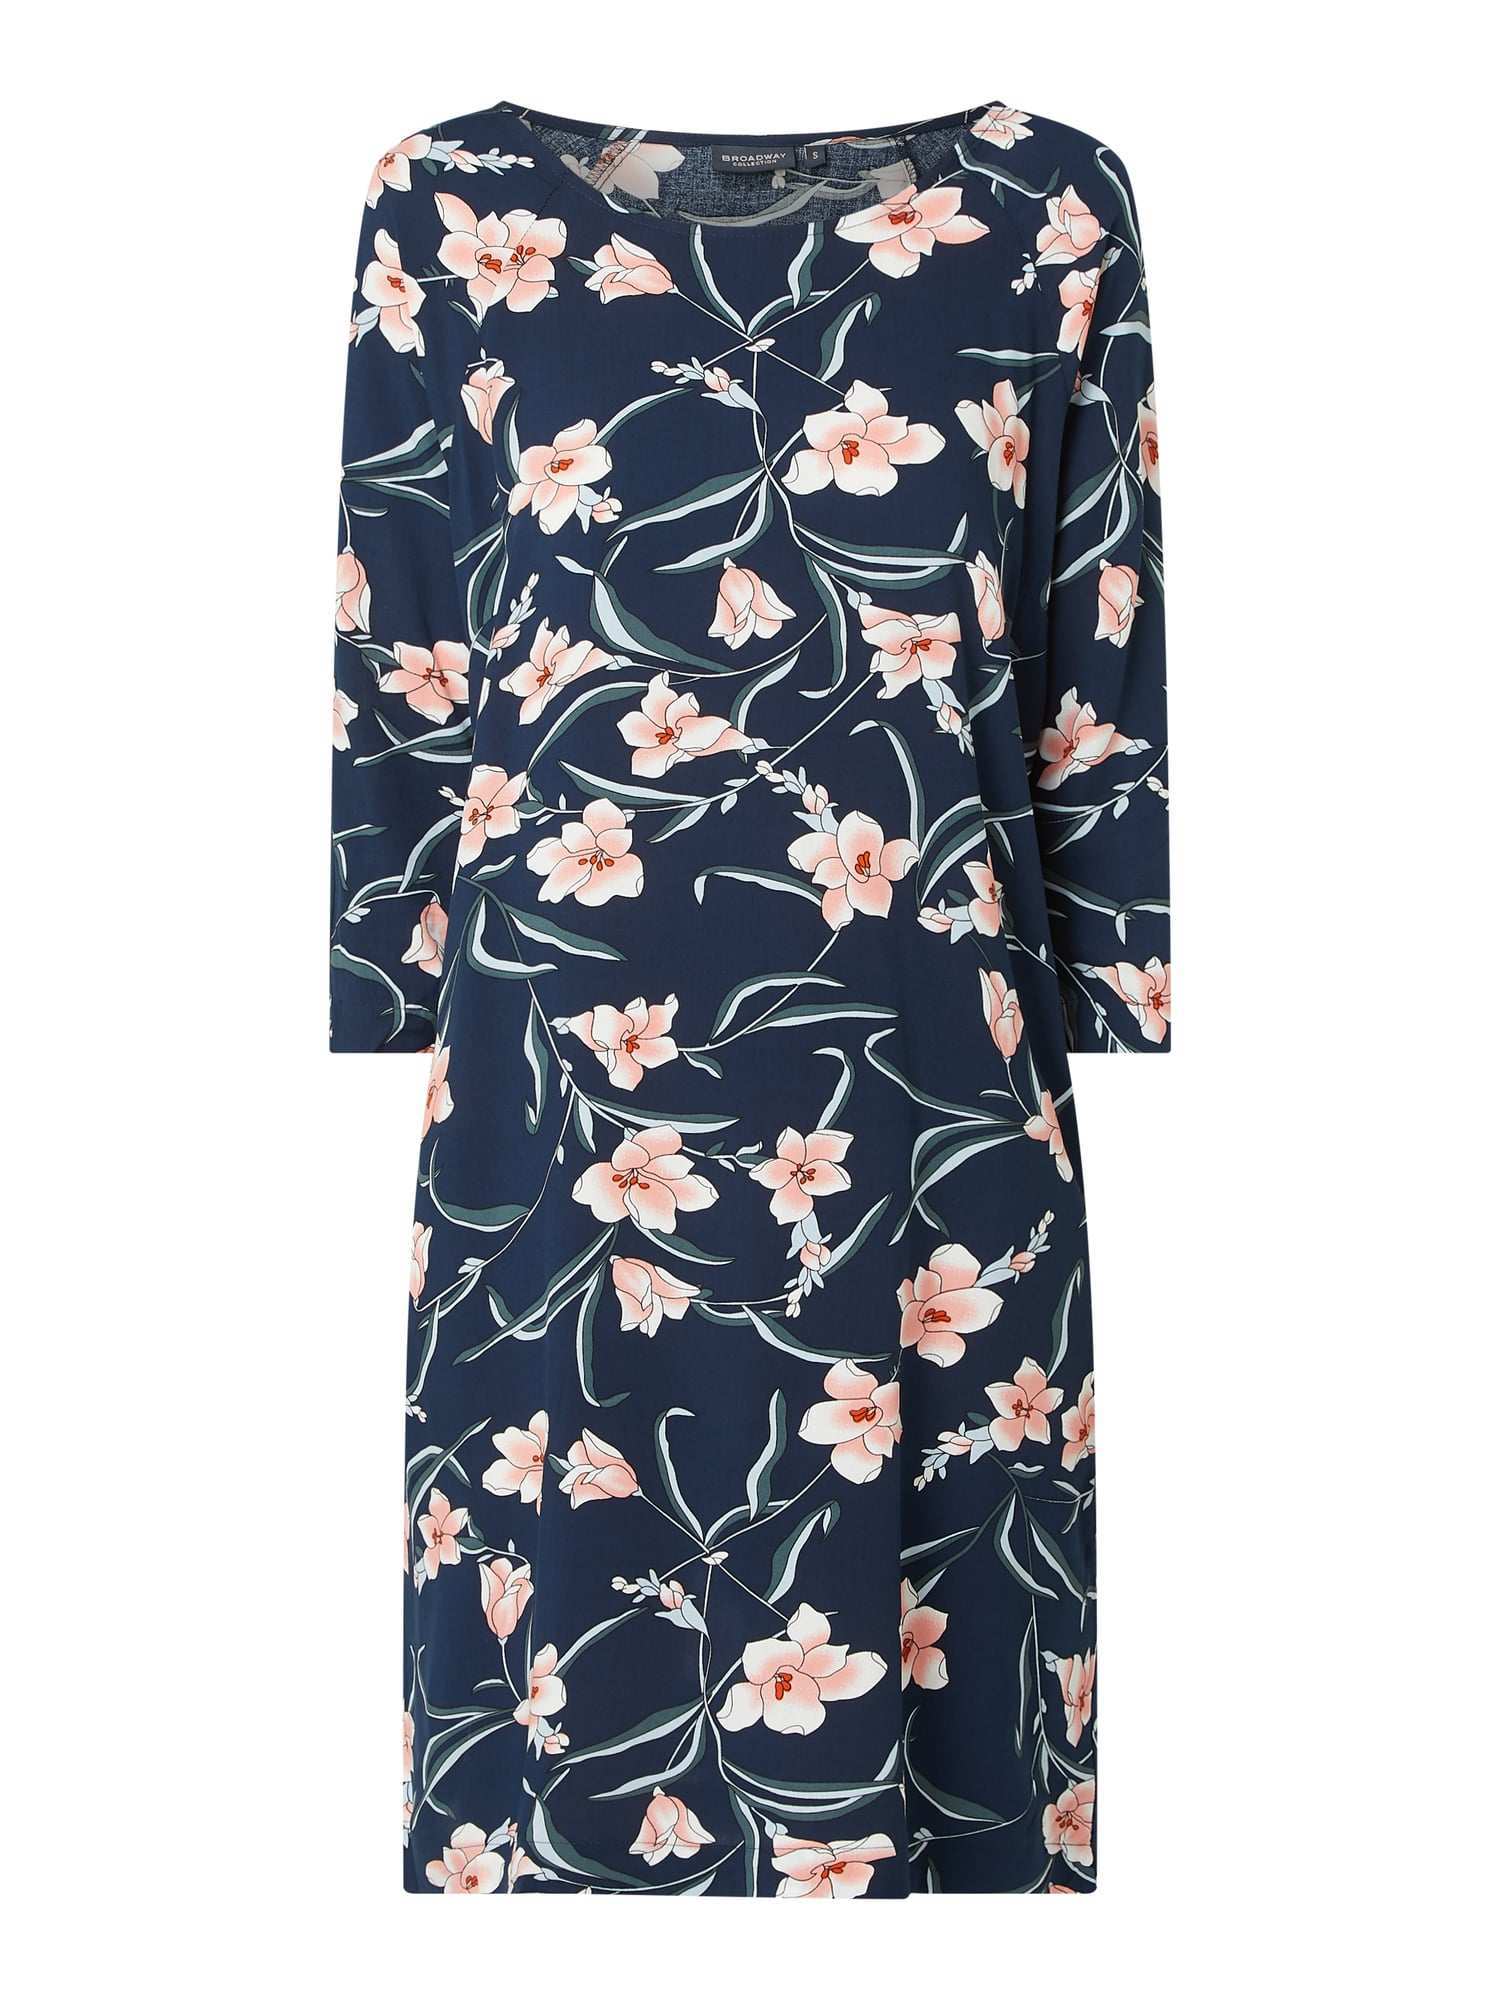 Broadway Nyc Kleid Mit Floralem Muster Modell Oona In Blau Turkis Online Kaufen 1104729 P C Online Shop